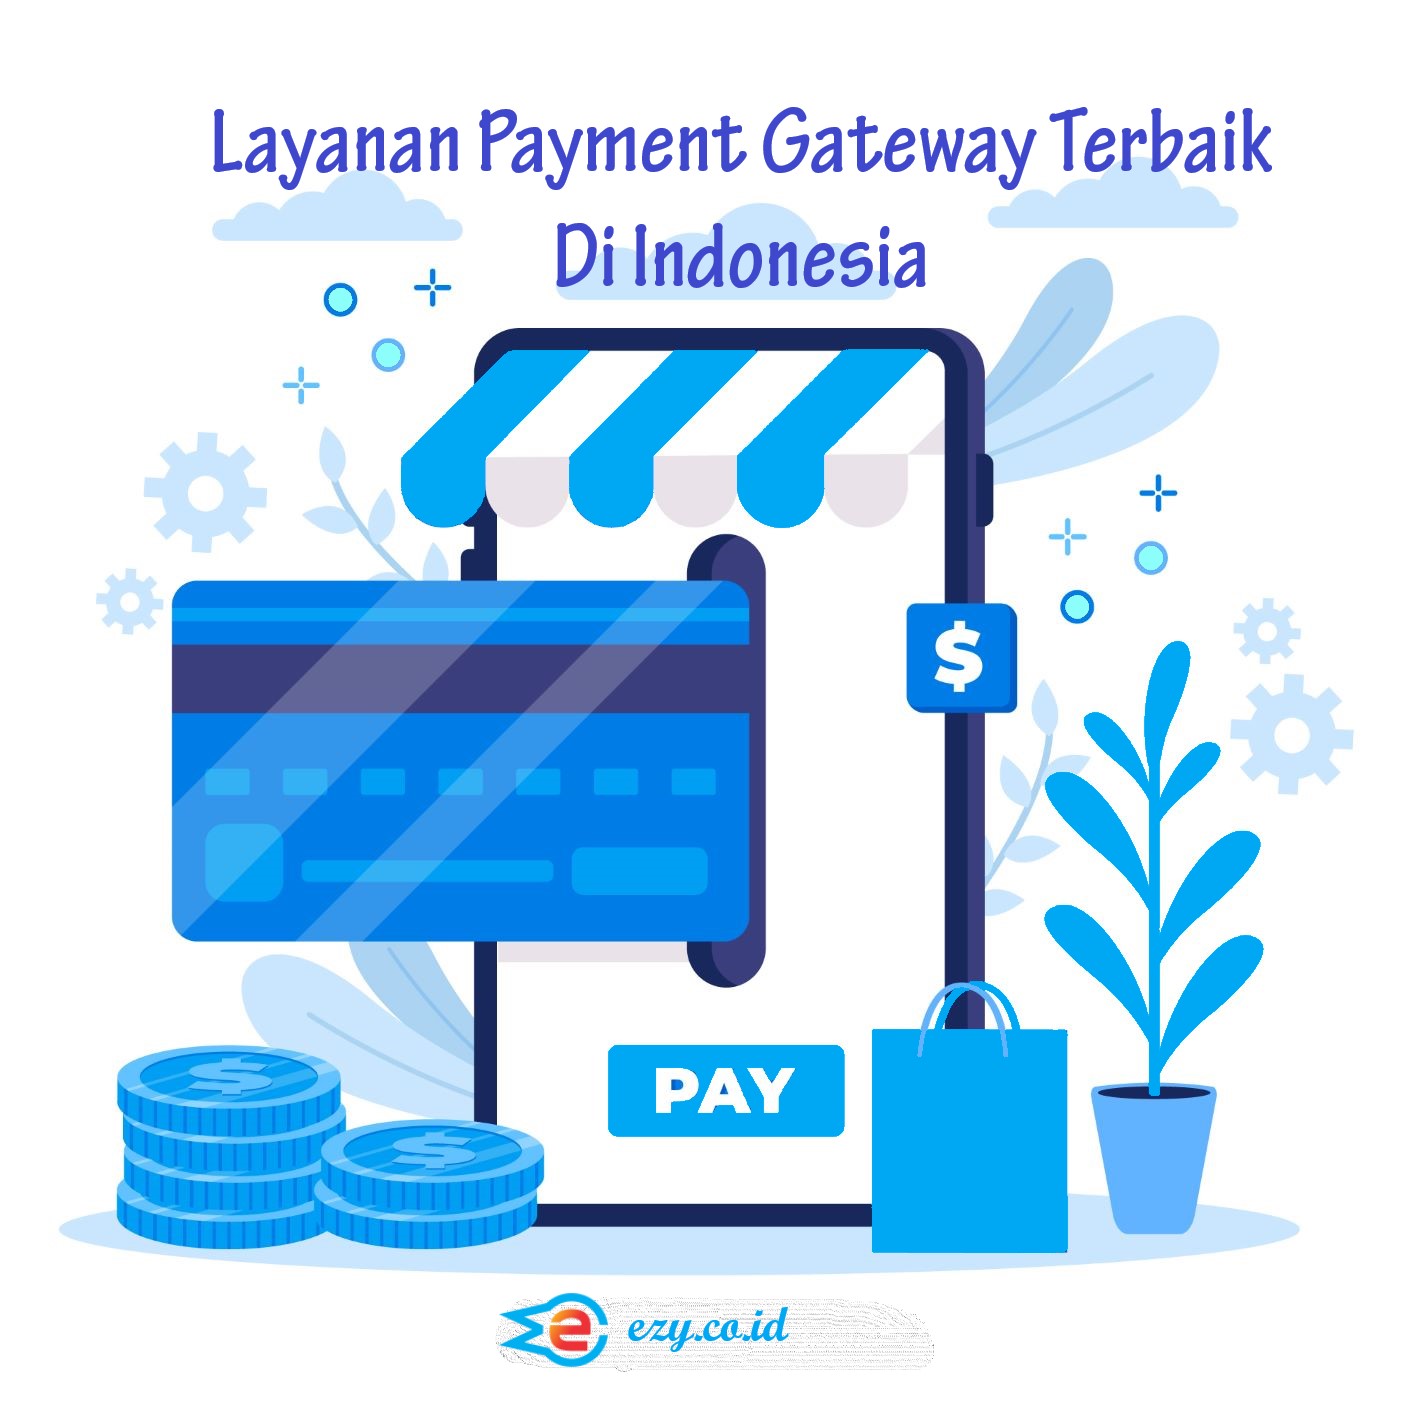 Layanan Payment Gateway Terbaik yang Bisa Digunakan Di Indonesia